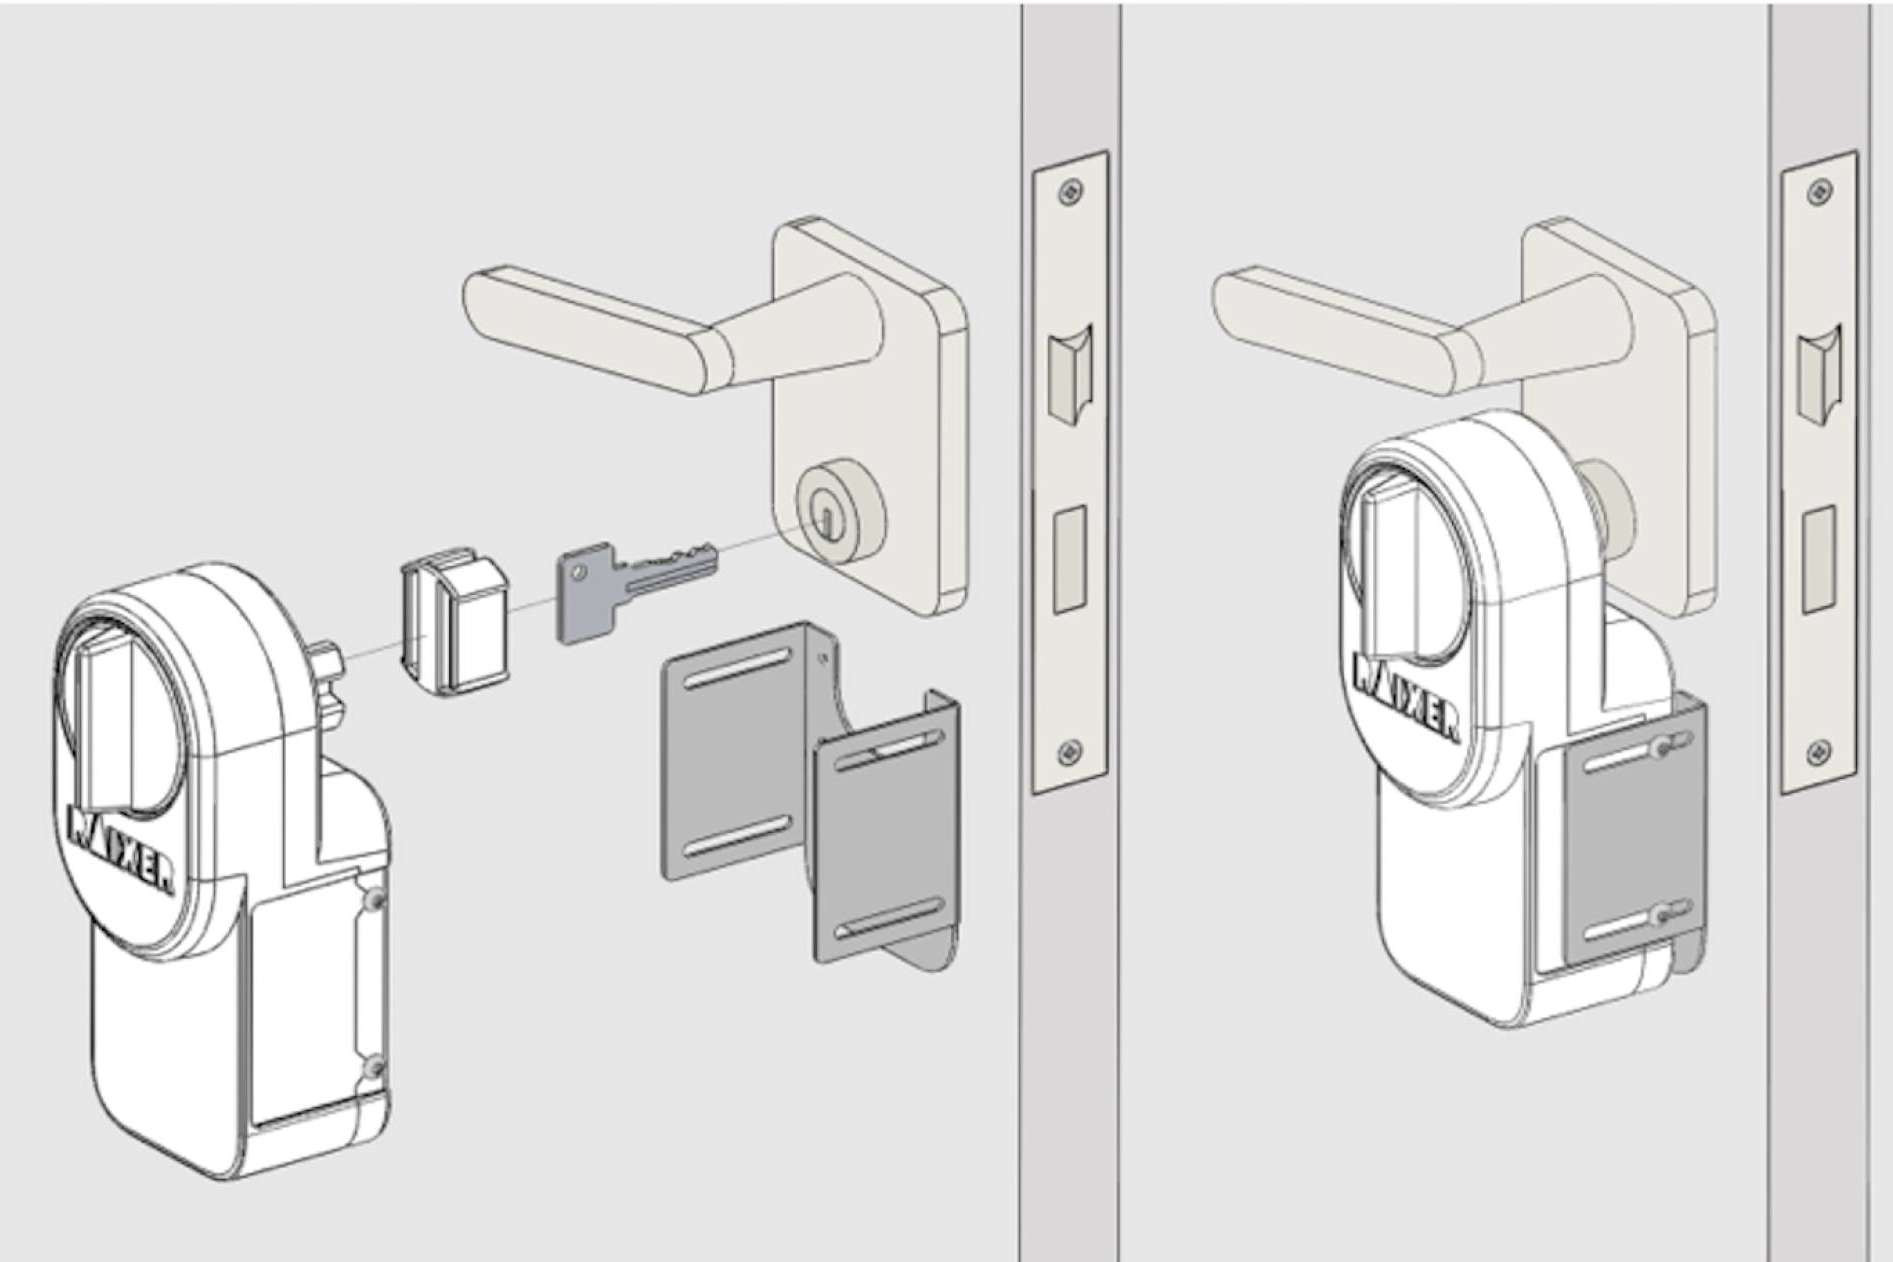  Raixer dispone de cerraduras inteligentes para abrir puertas a distancia 